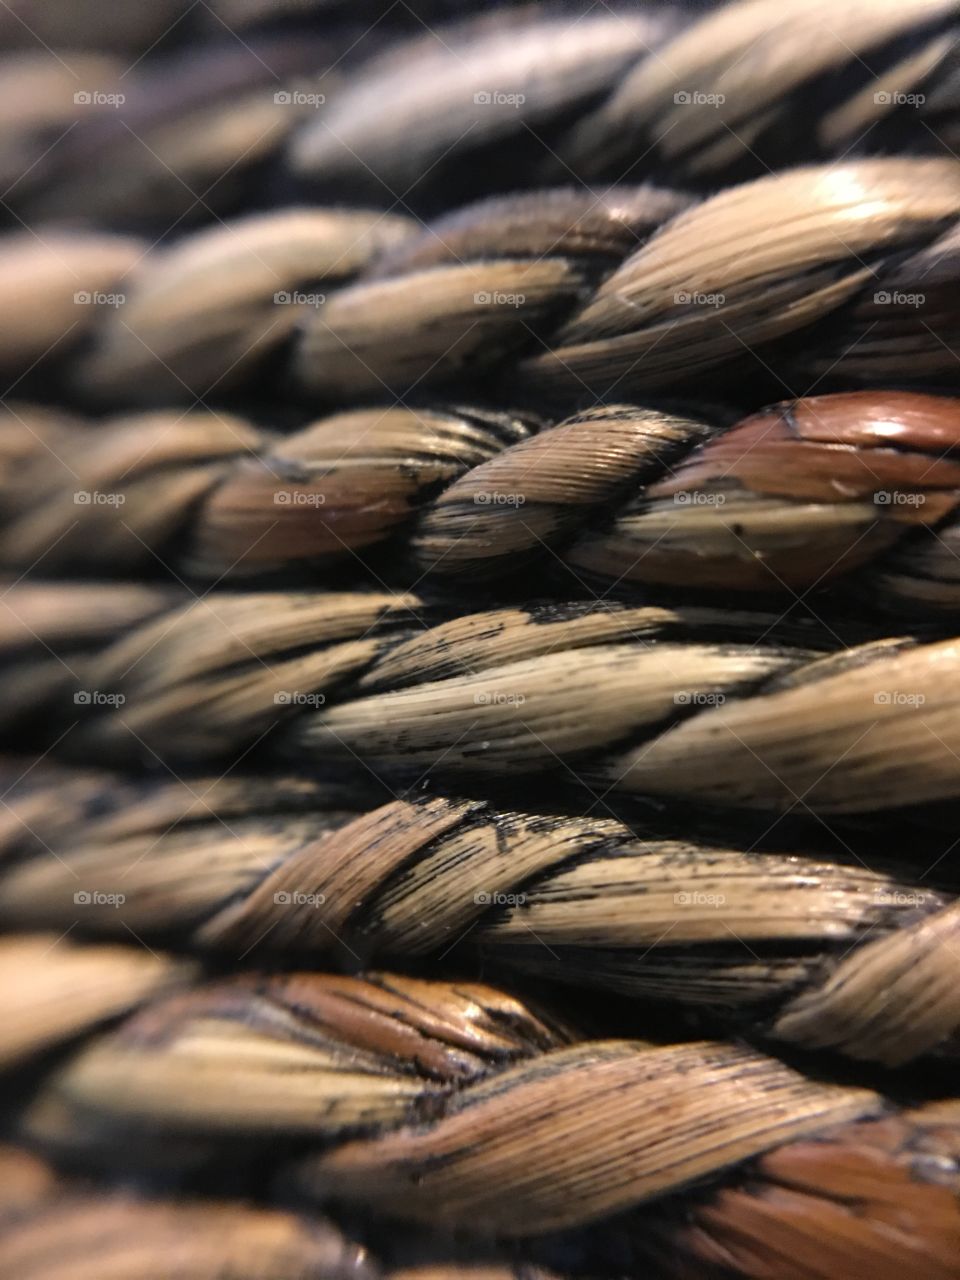 Wicker weave texture